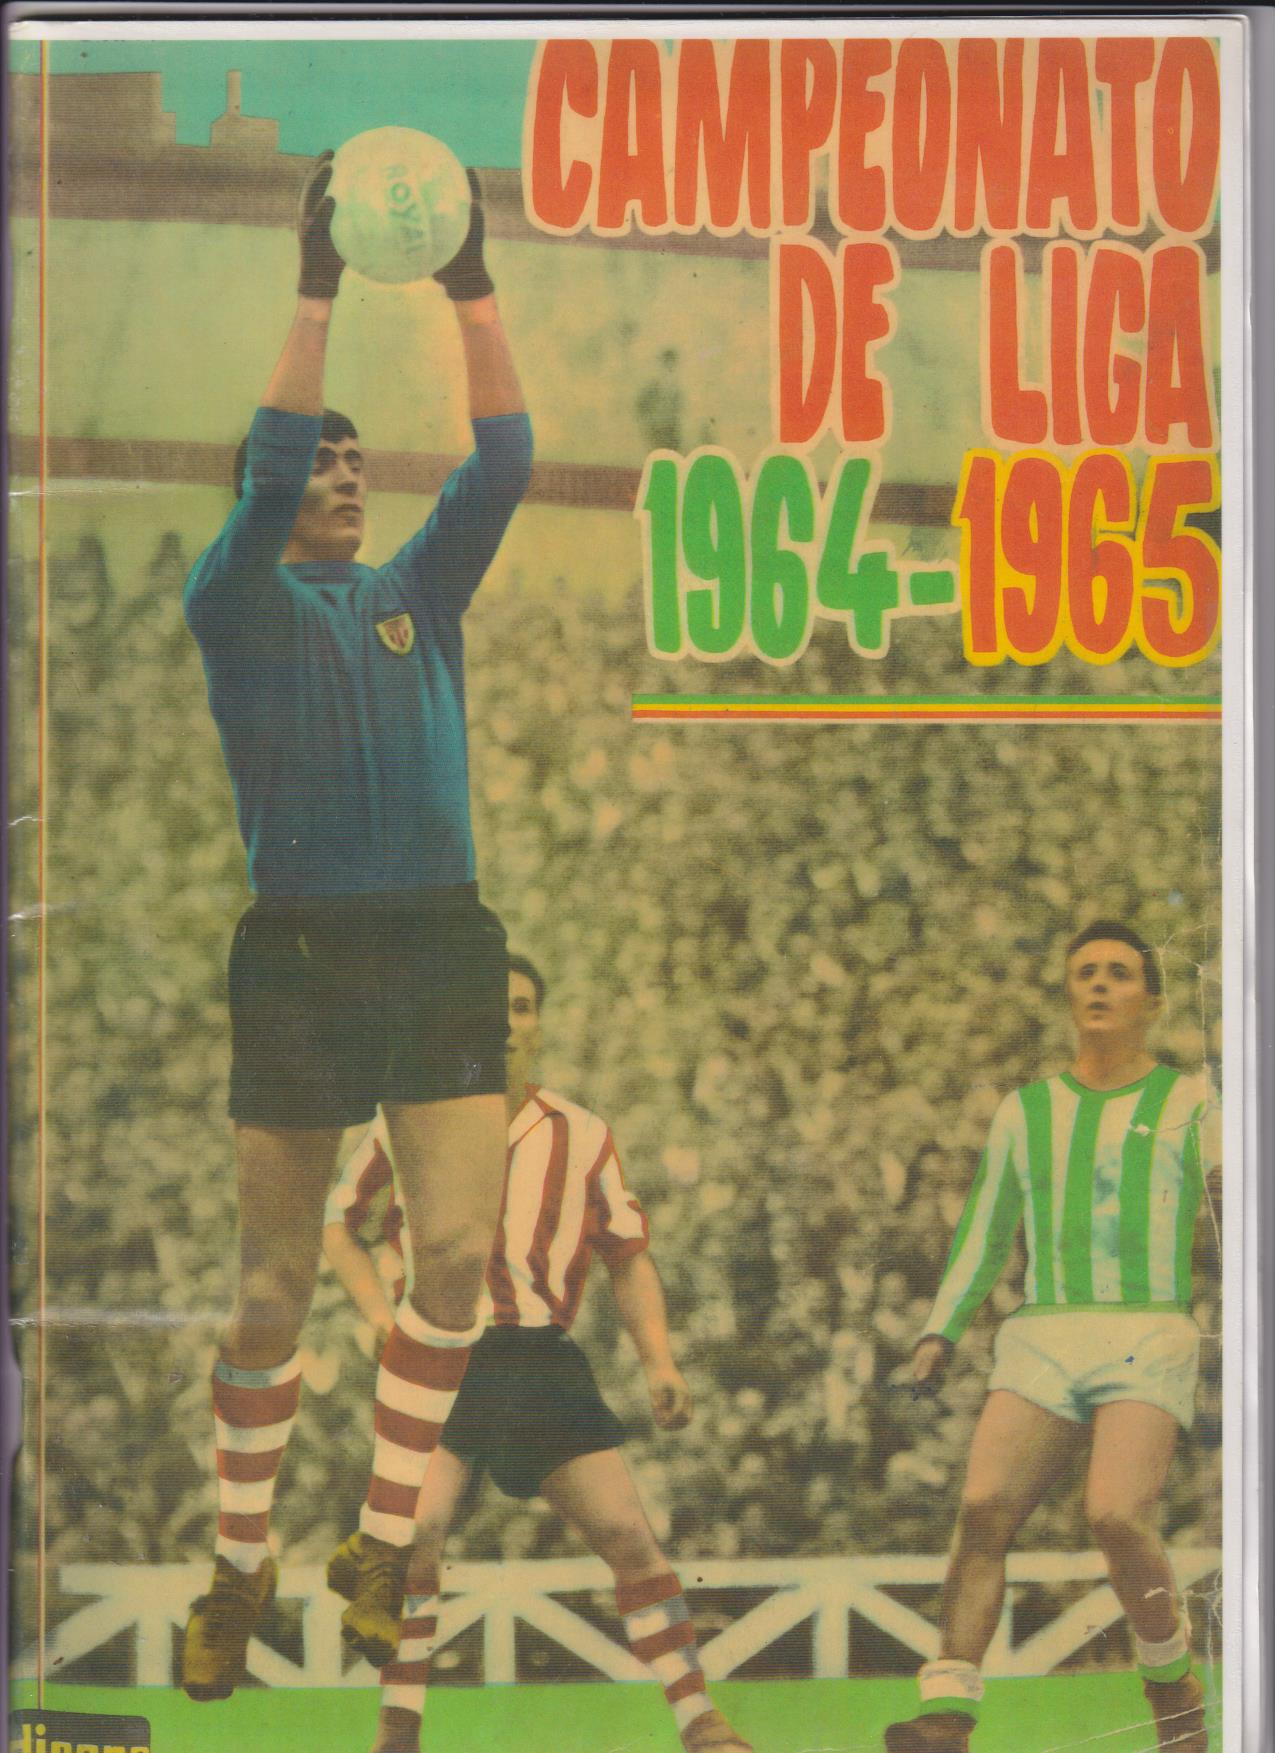 Campeonato de Liga 1964-65. Disgrá. Reproducción con los cromos sueltos, pegados por el margen superior